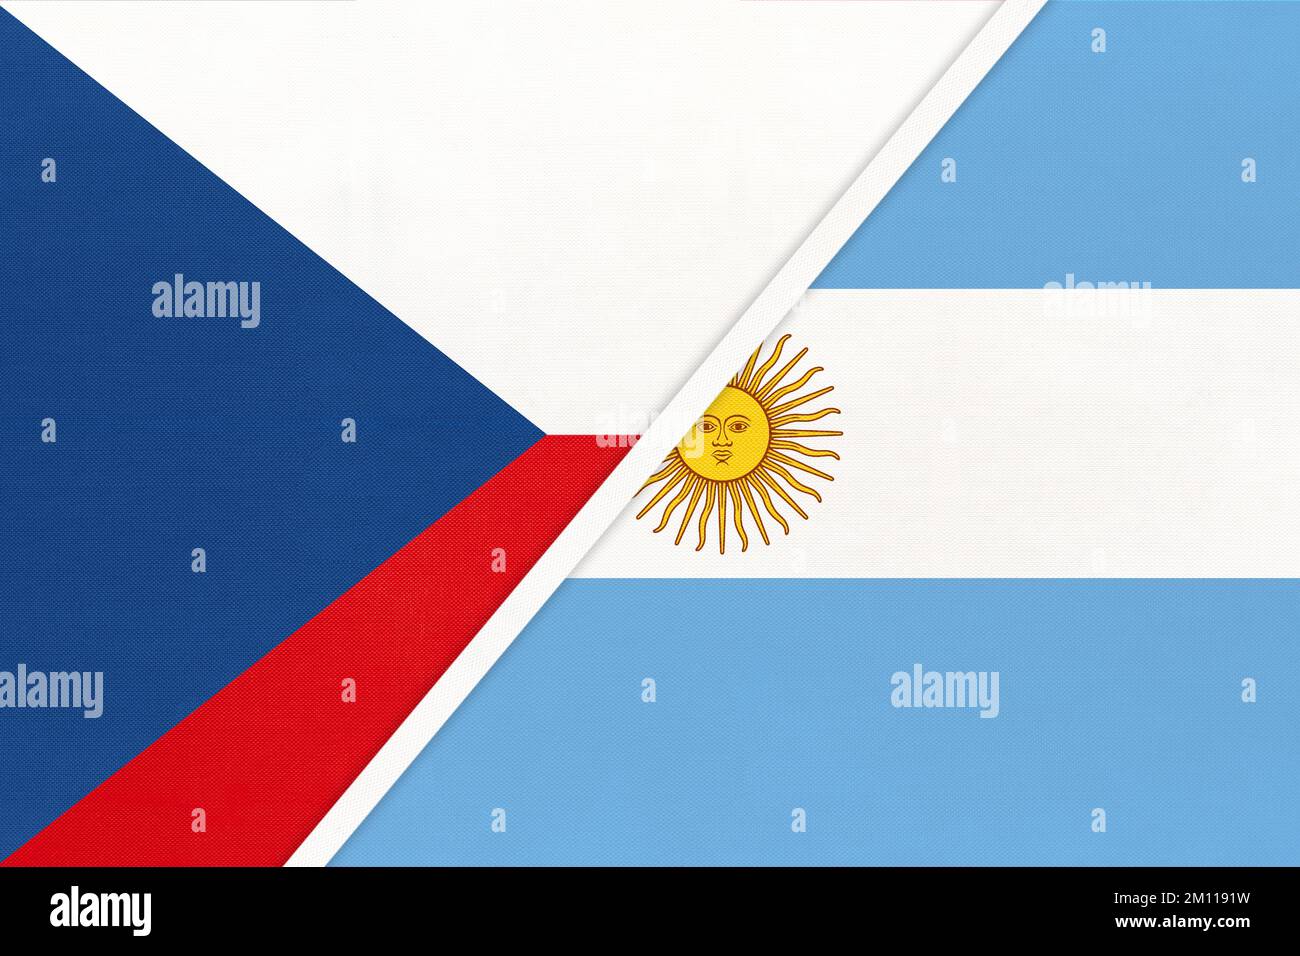 République tchèque et Argentine ou République Argentine, symbole de pays. La Tchéquie contre les drapeaux nationaux argentins. Relation et partenariat entre deux Banque D'Images